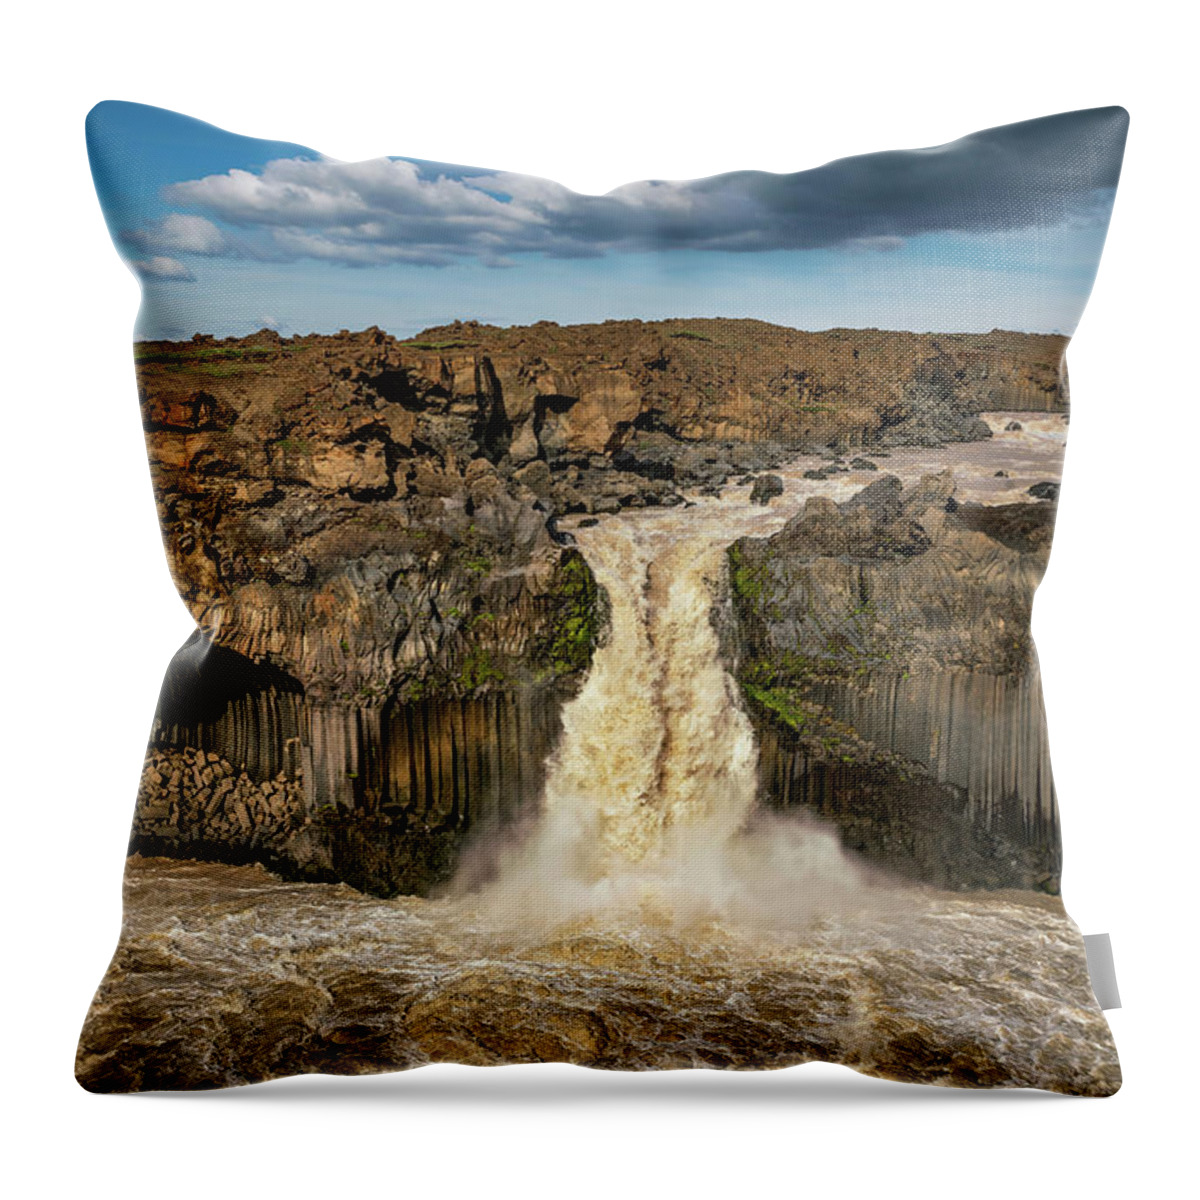 Aldeyjarfoss Throw Pillow featuring the photograph Iceland - Aldeyjarfoss waterfall by Olivier Parent